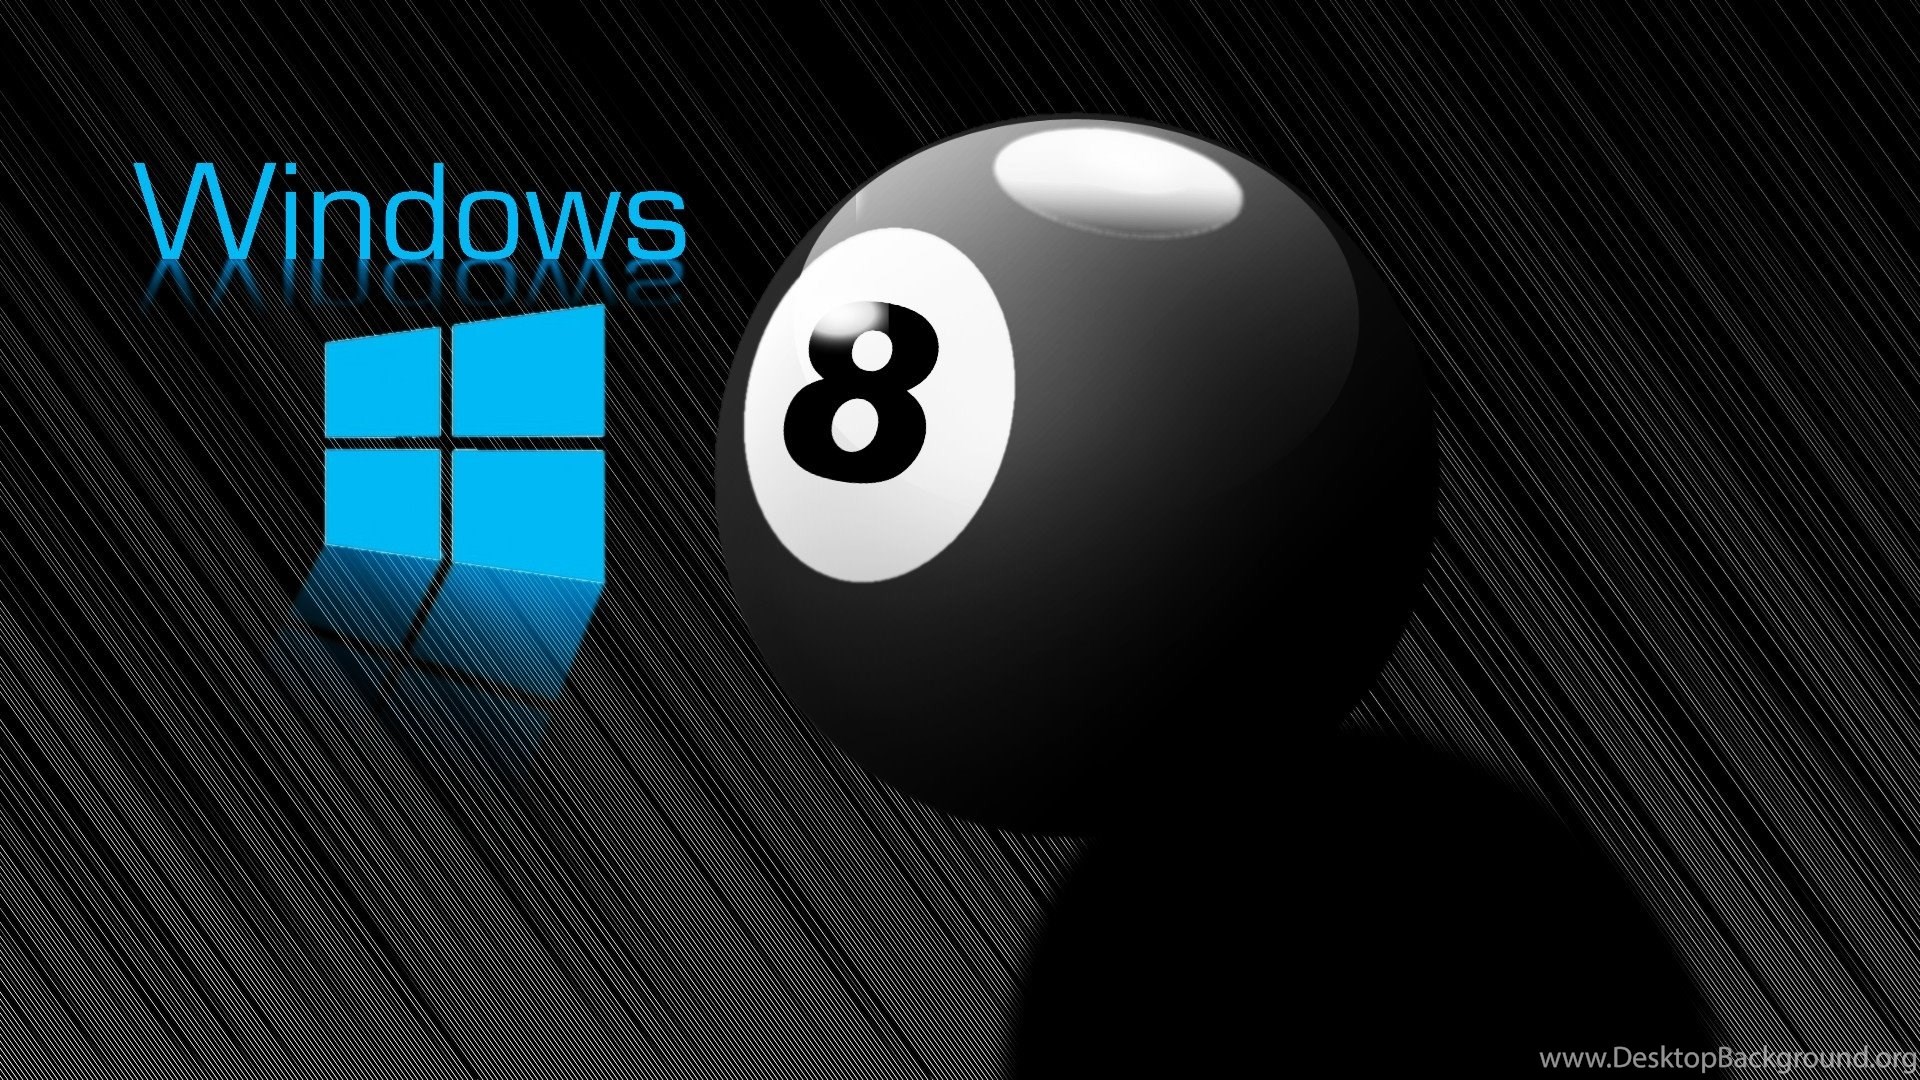 1920x1080 Windows 8 Ball Wallpapers Hd 3d For Desktop Bla